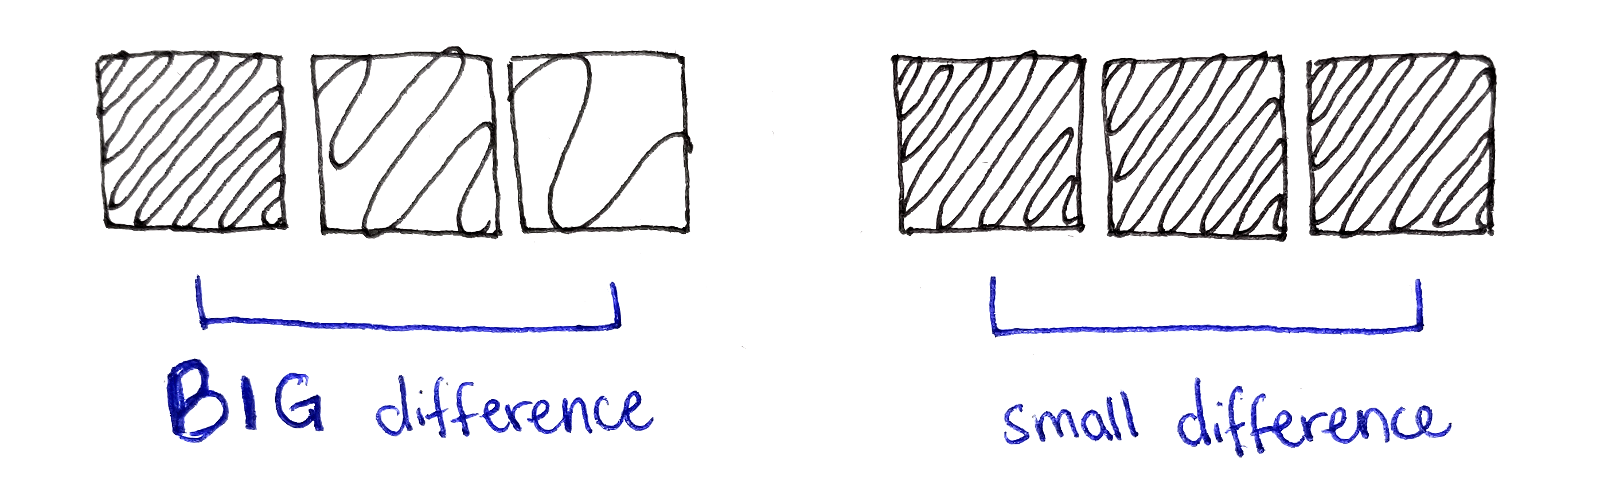 左半边表示，当相邻像素的颜色非常不同时这个像素的能量大。右半边表示，当相邻像素的颜色比较相似时像素的能量小。